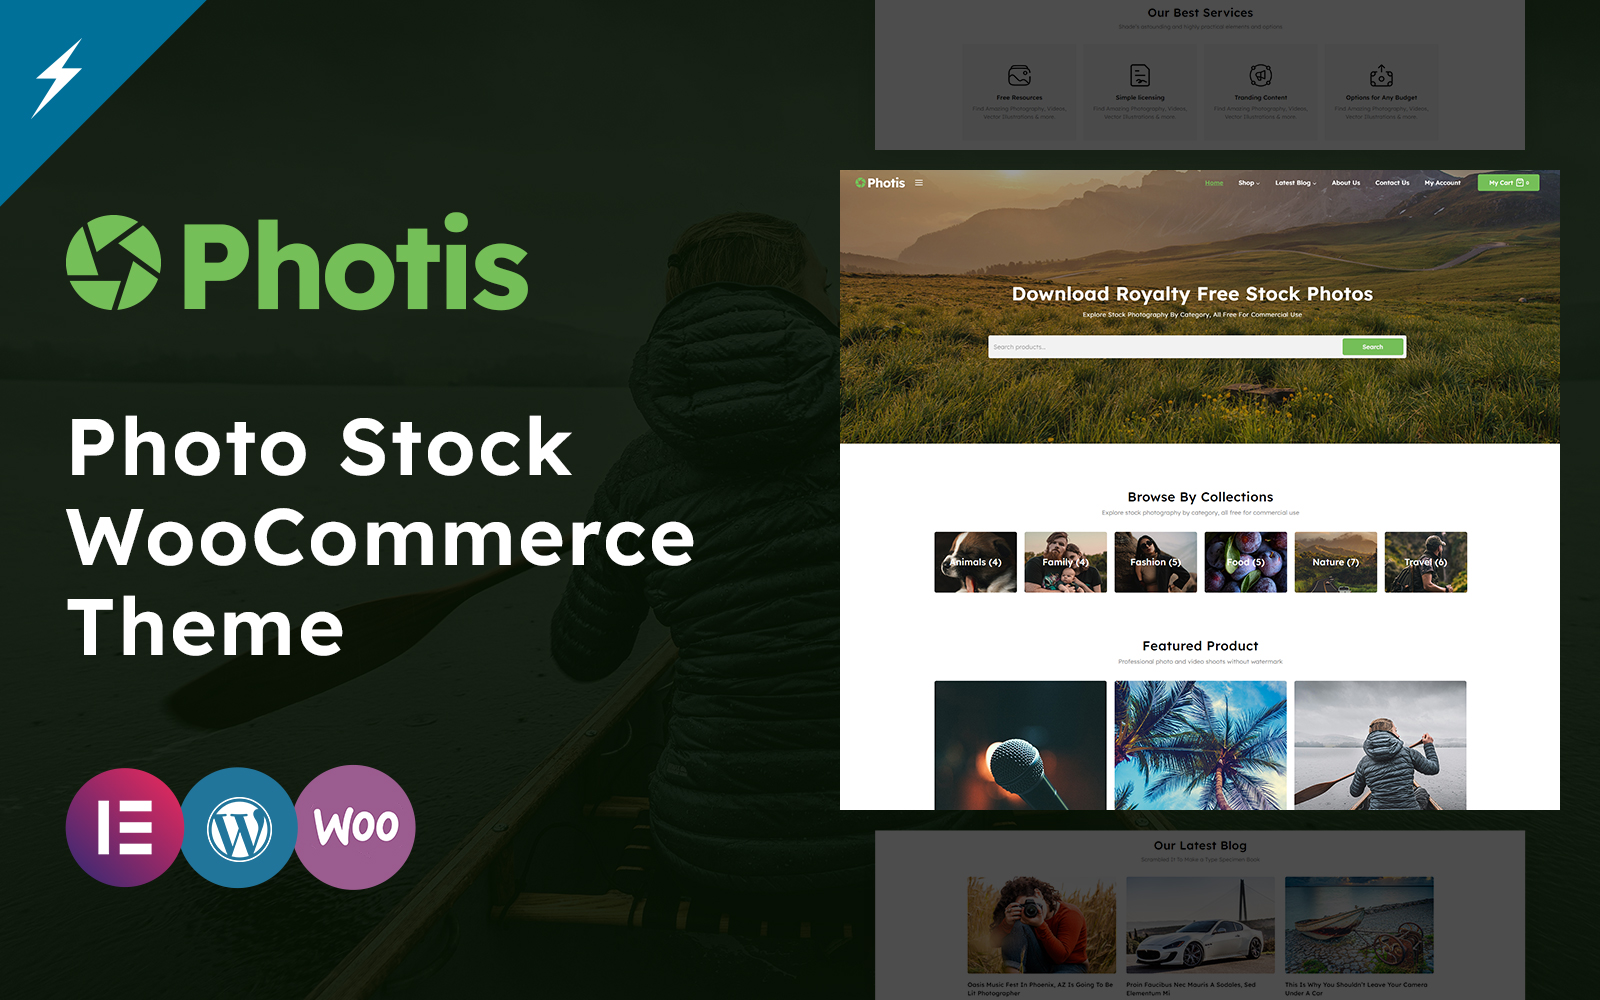 Photis - Photo Stock WooCommerce Theme